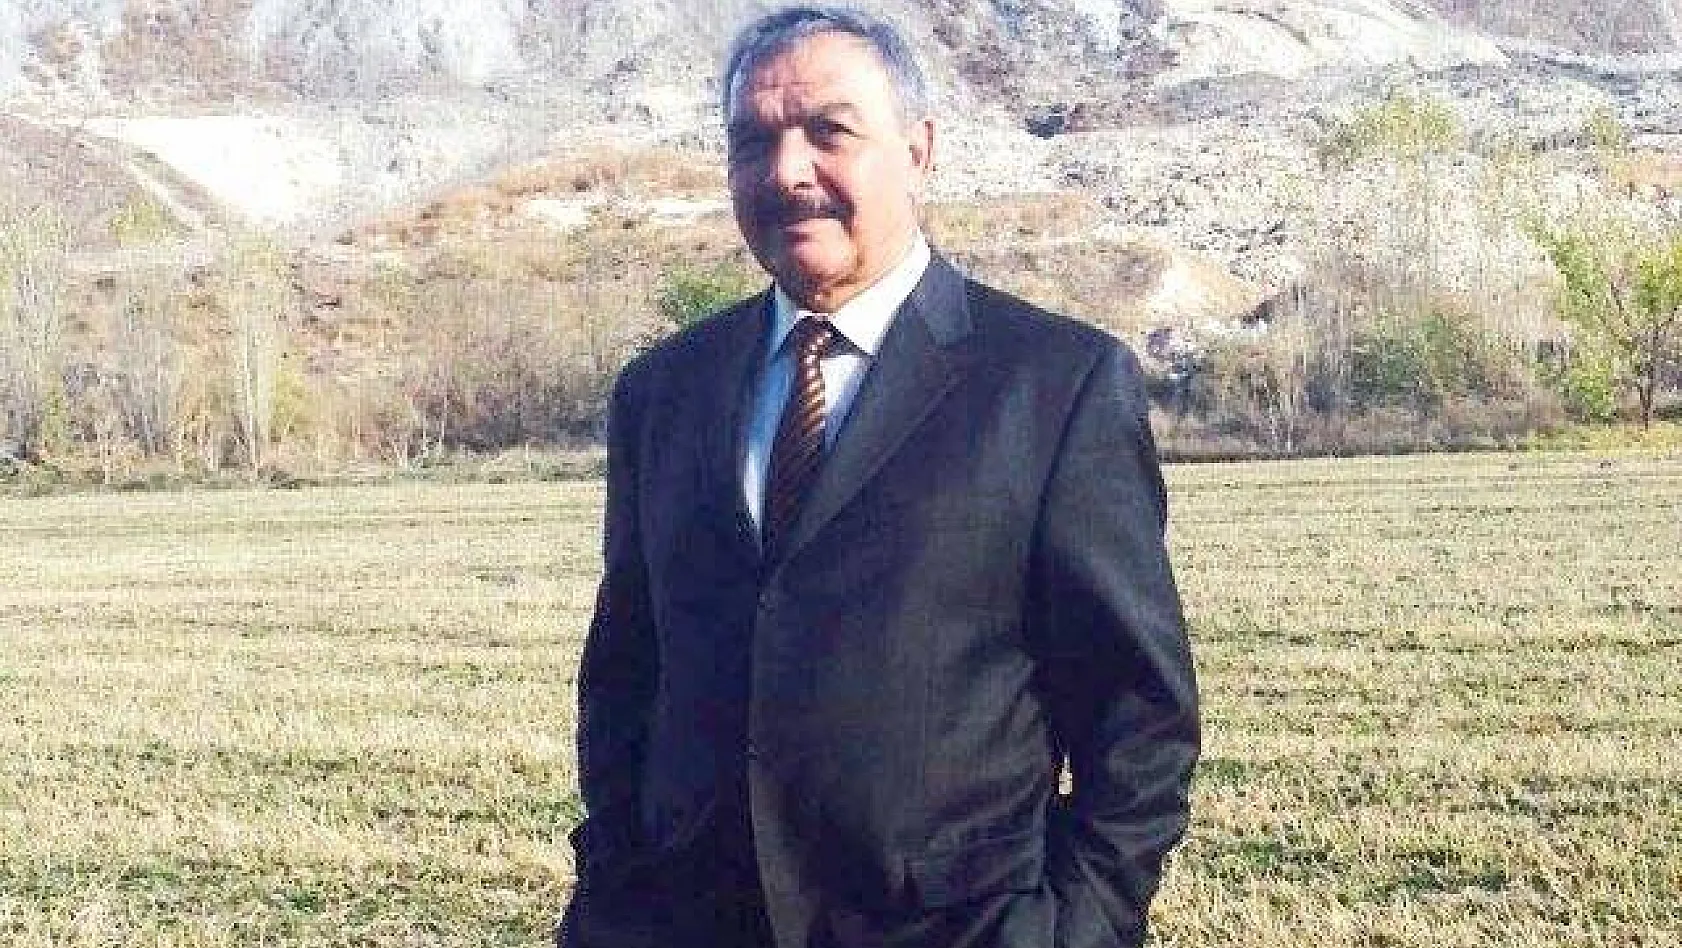 Kayseri Şeker'in Güvenlik Müdürü Öztoprak'tan FETÖ tepkisi: O iş bana bulaşmaz